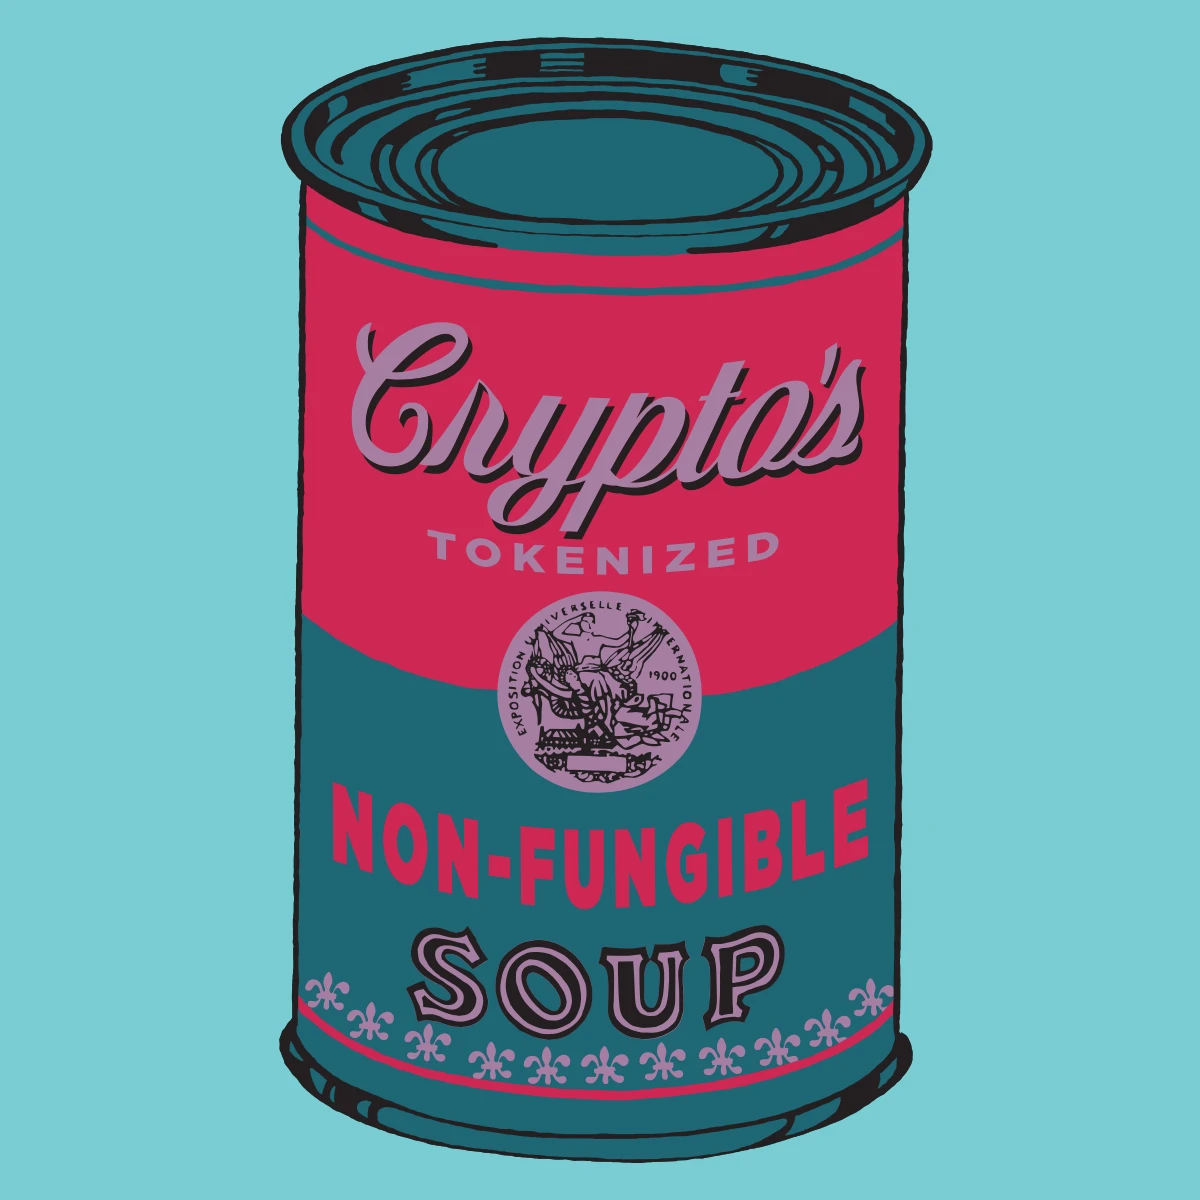 Non-Fungible Soup #1998